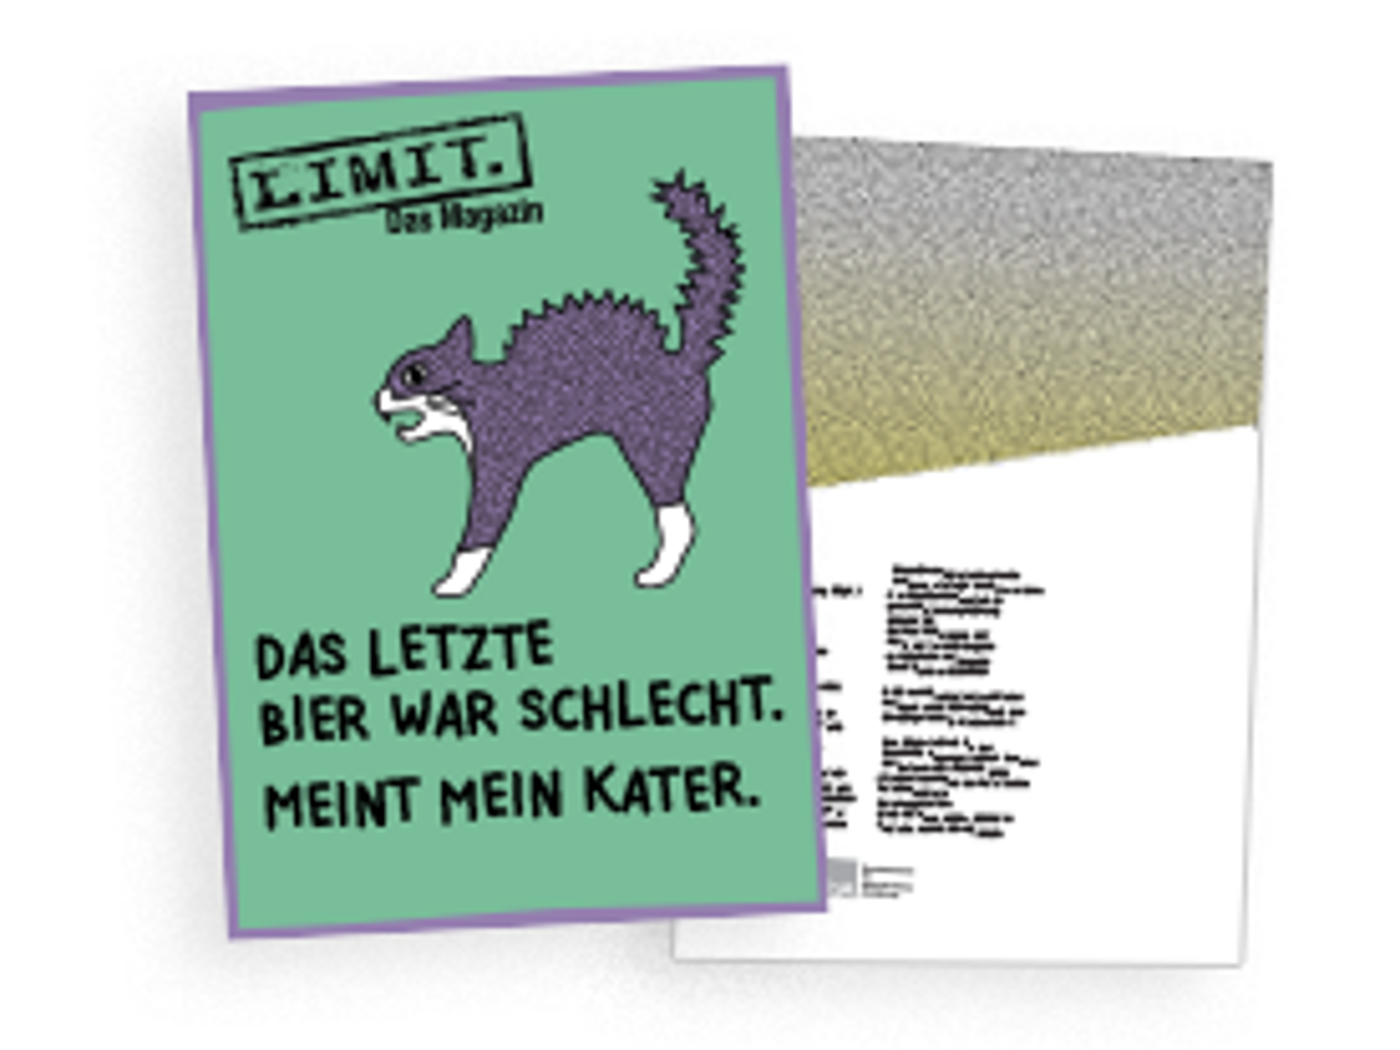 Download-PDF Magazin "Limit"